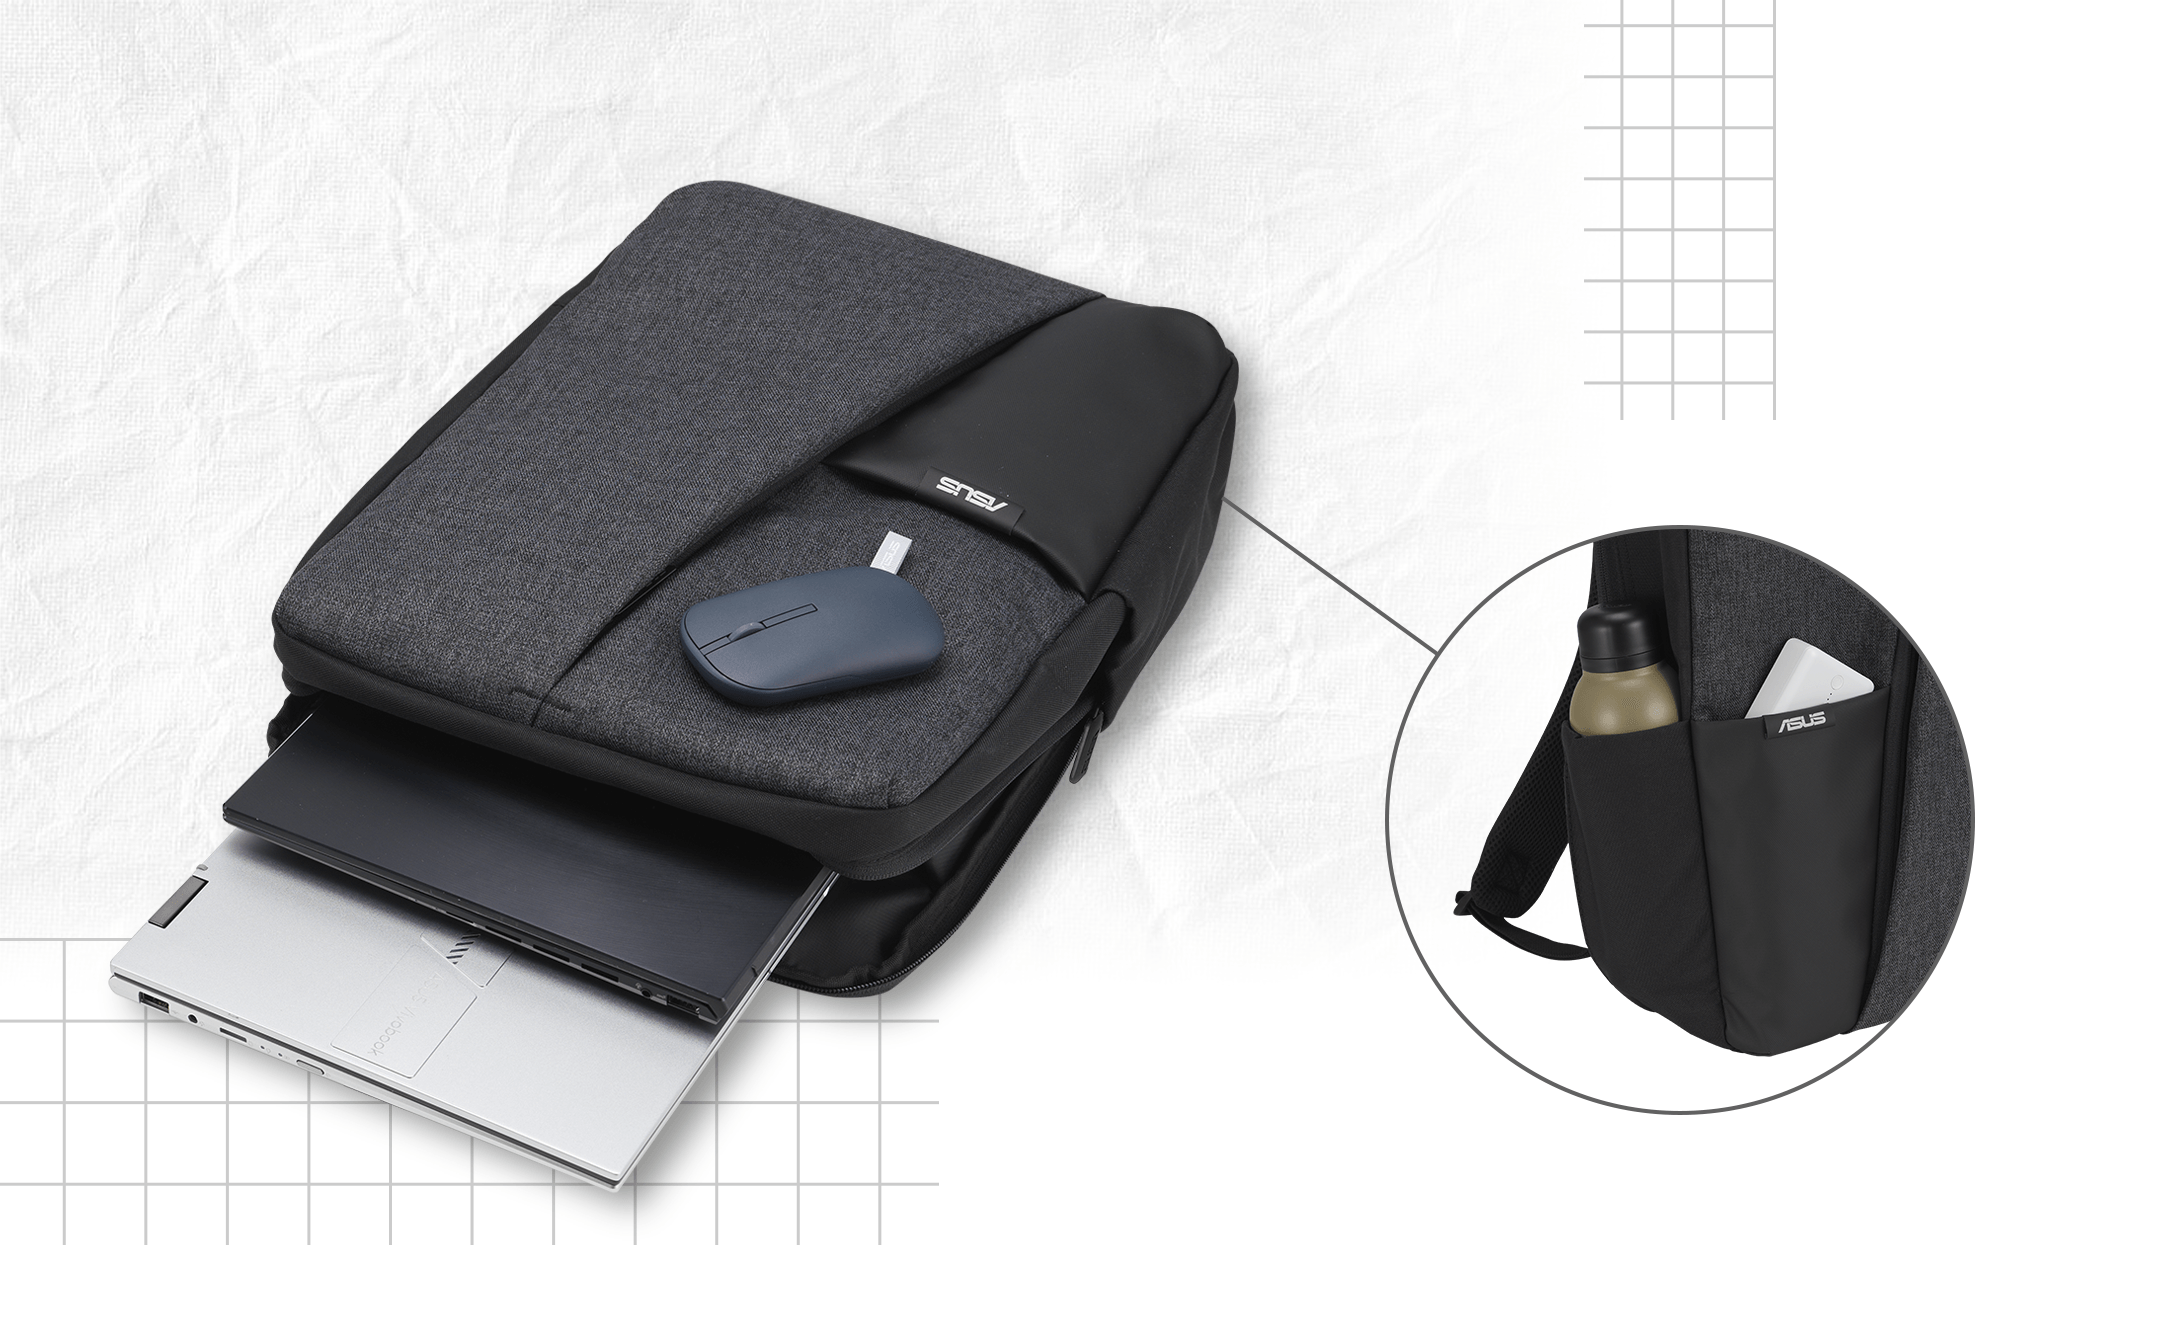 Plecak ASUS AP4600 z dwoma laptopami i myszką. Na małych obrazach widać: boczną kieszeń plecaka z butelką wody, a także przednią kieszeń z przenośnym powerbankiem.